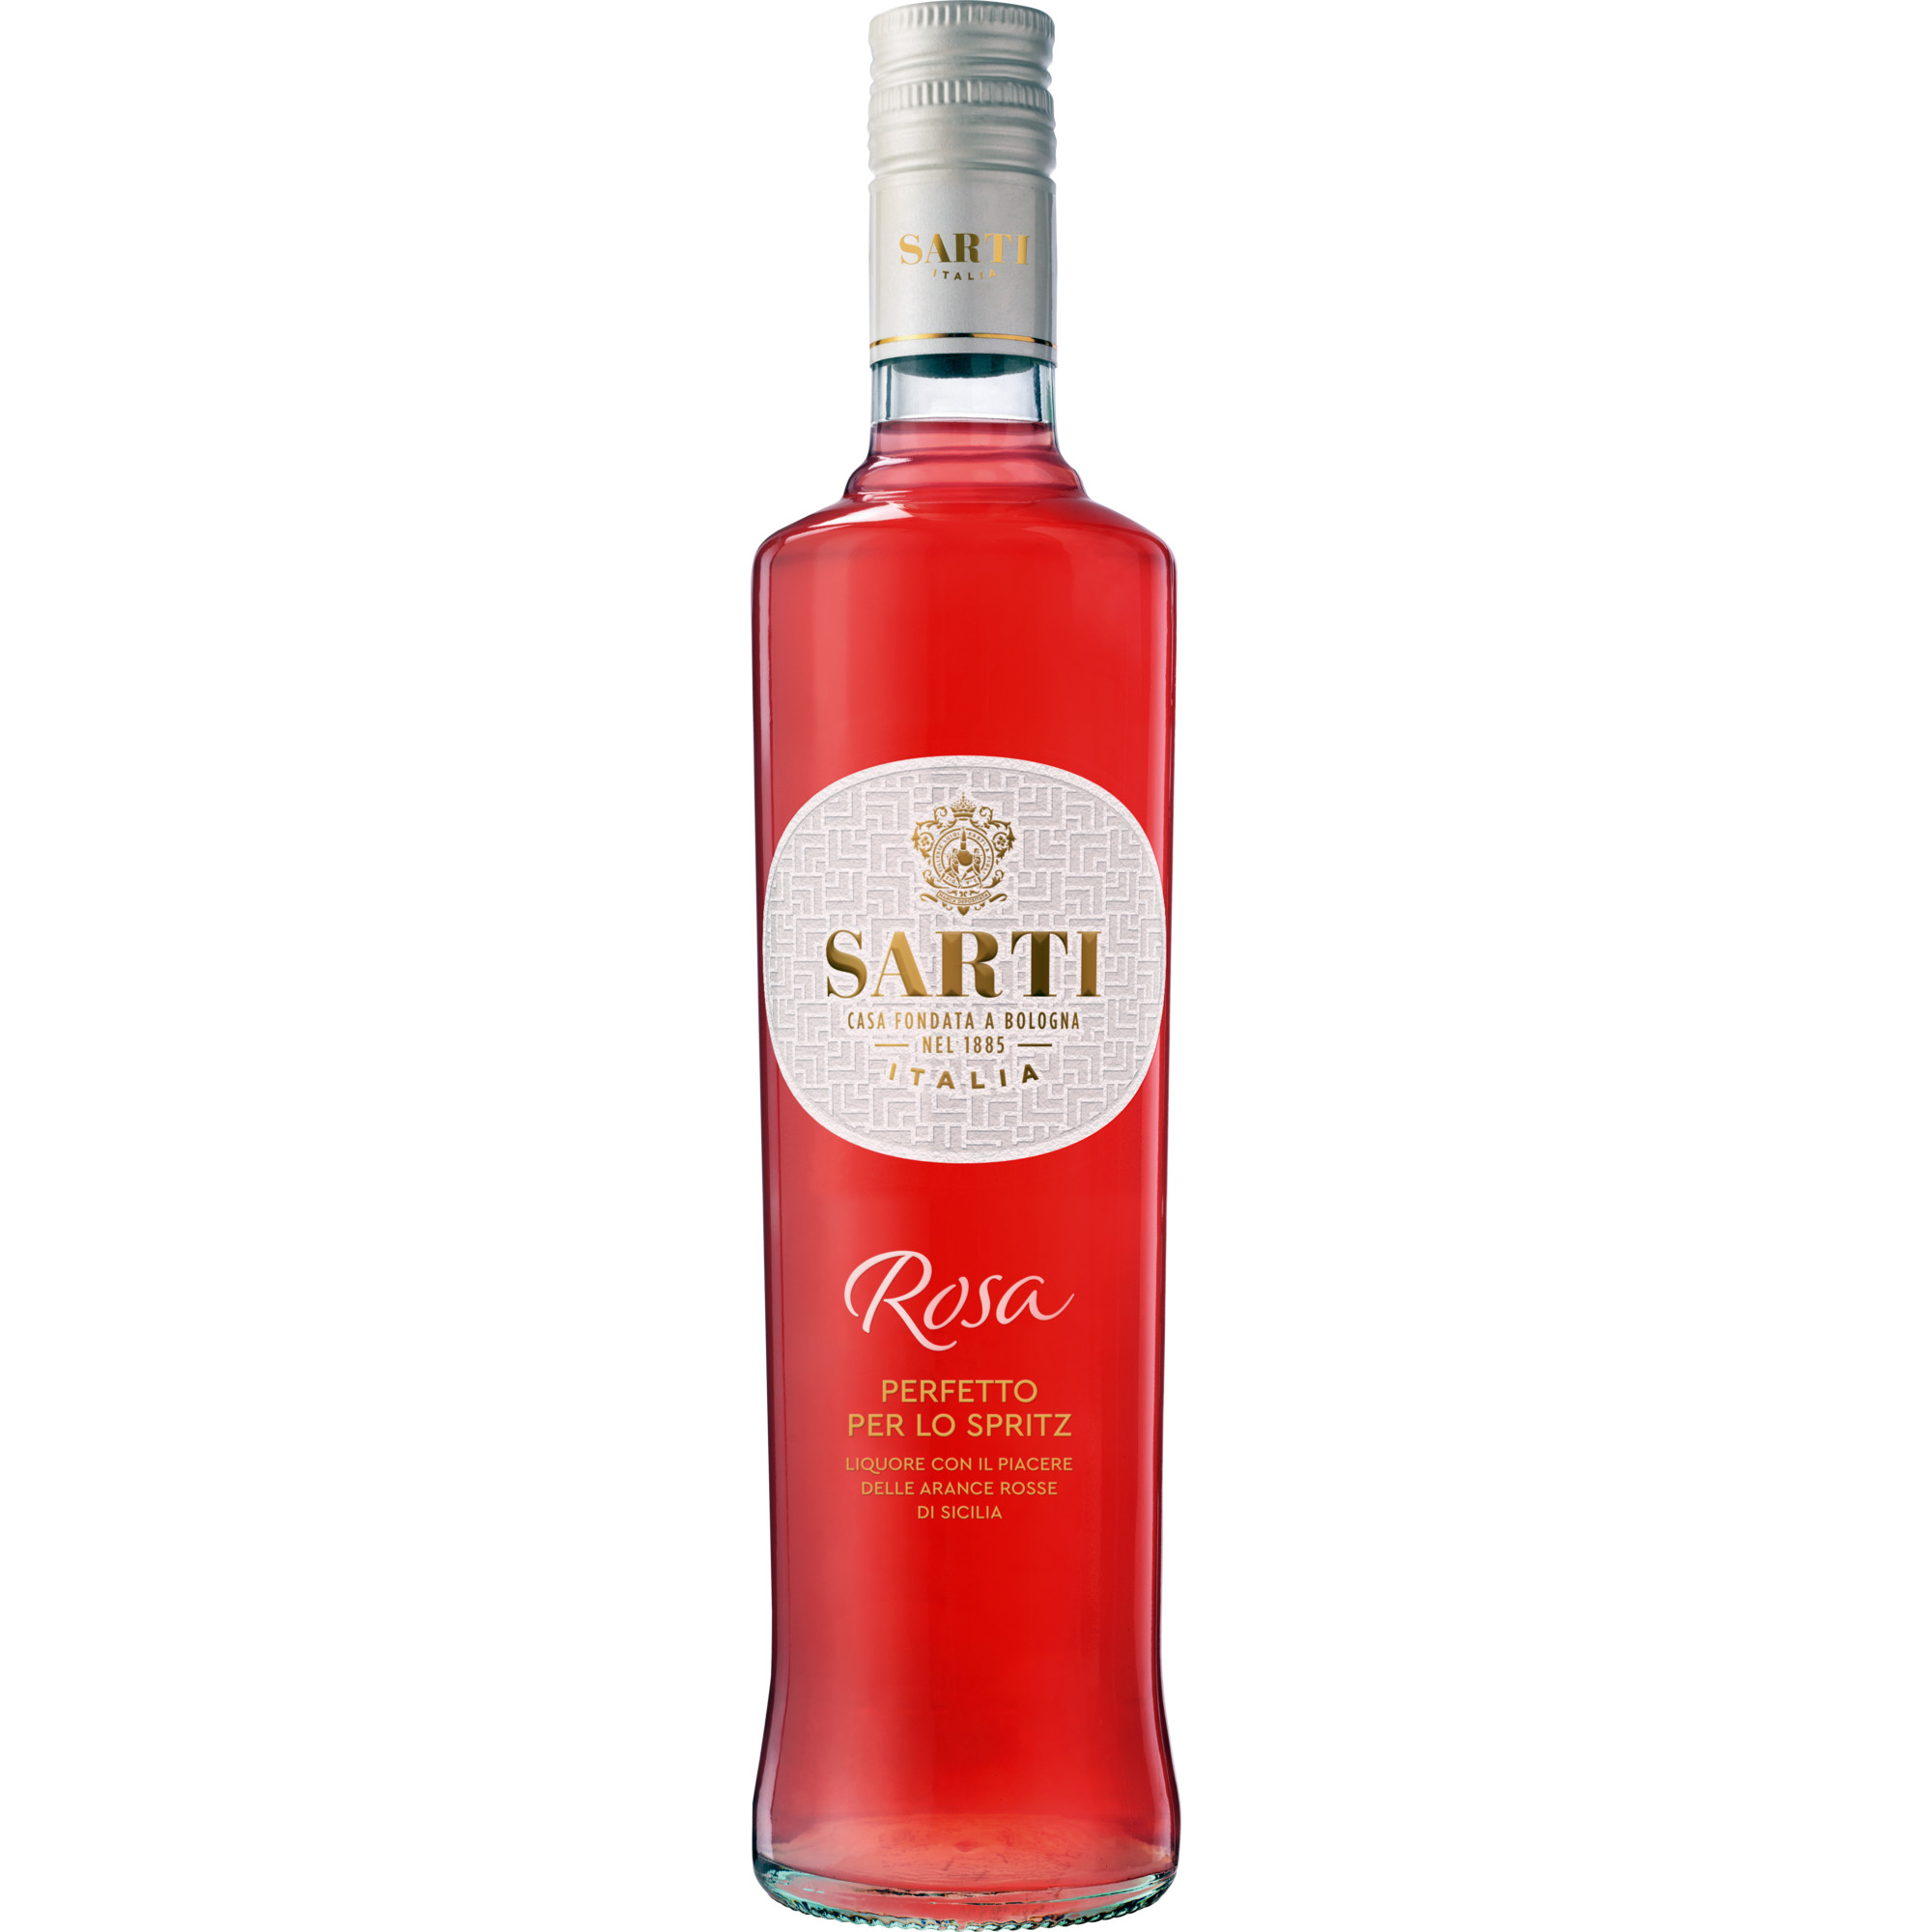 Sarti Rosa Aperitif, Italien, 0,7 L, 14% Vol., Sizilien, Spirituosen  Spirituosen Hawesko